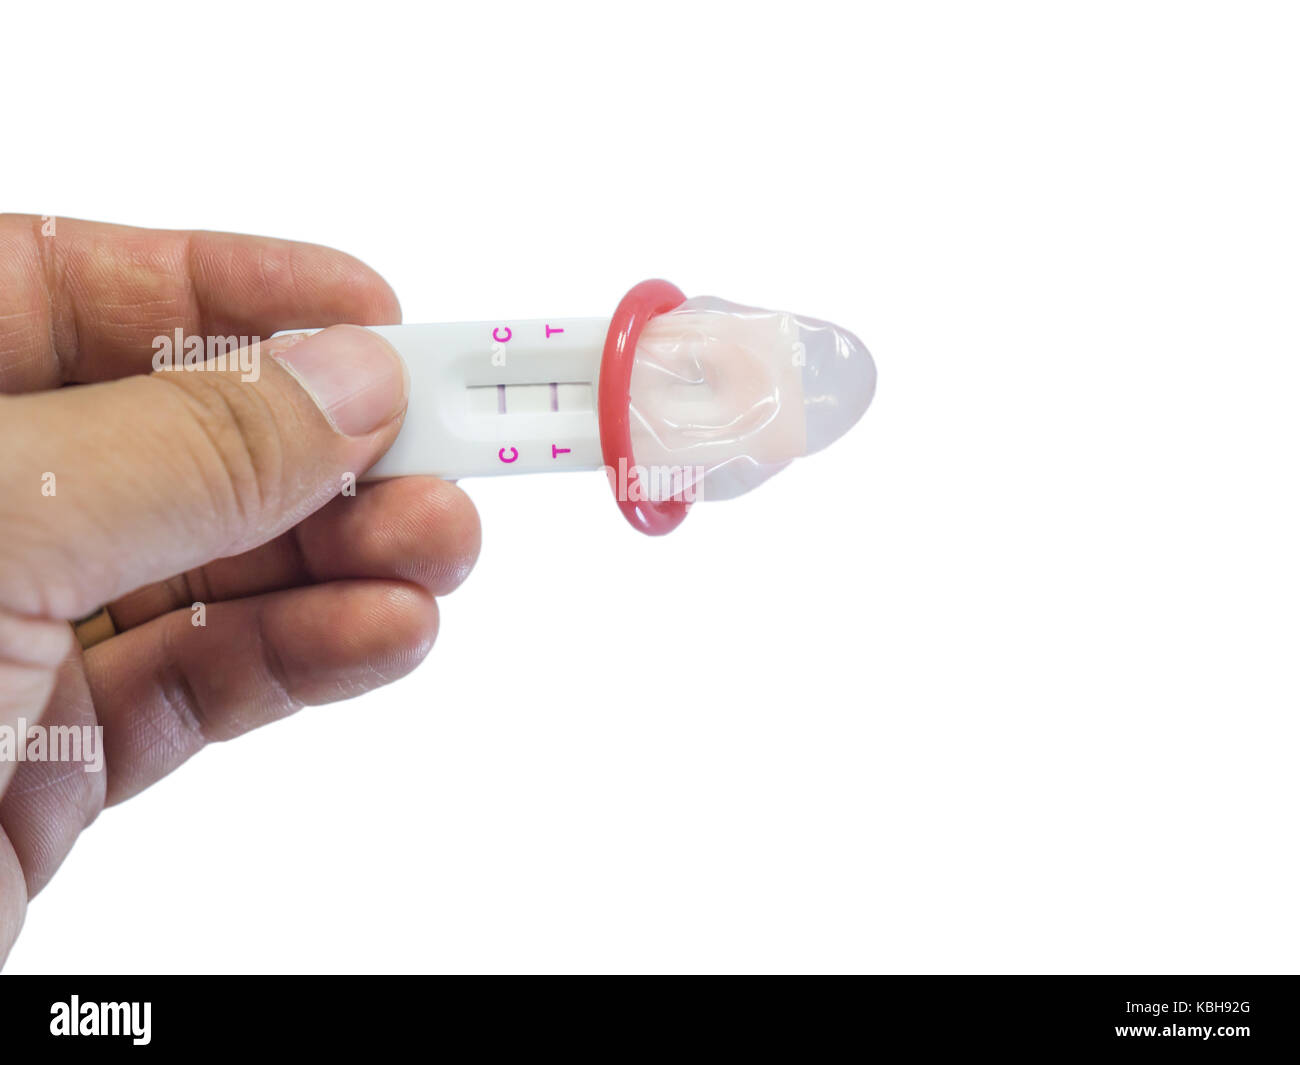 Contraceptifs concept. d'hommes occupant des tests de grossesse positif portant des préservatifs dans sa main isolées sur fond blanc. Banque D'Images